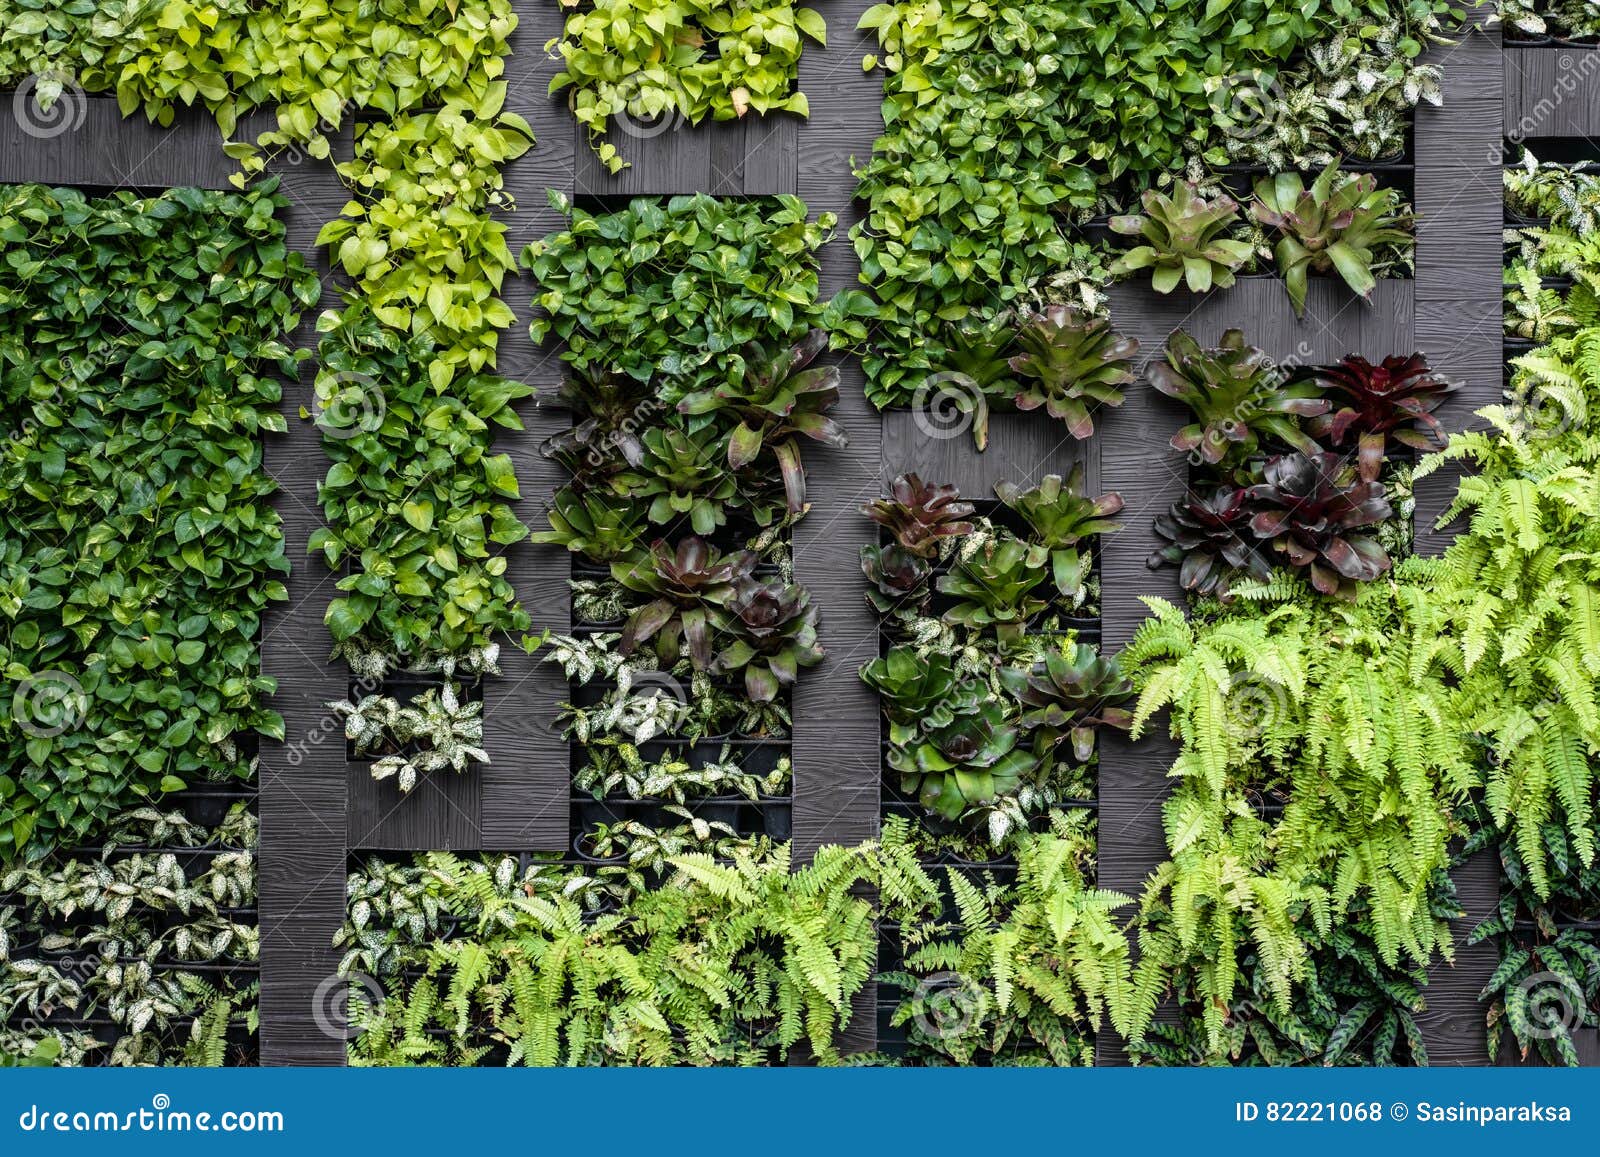 green wall, eco friendly vertical garden